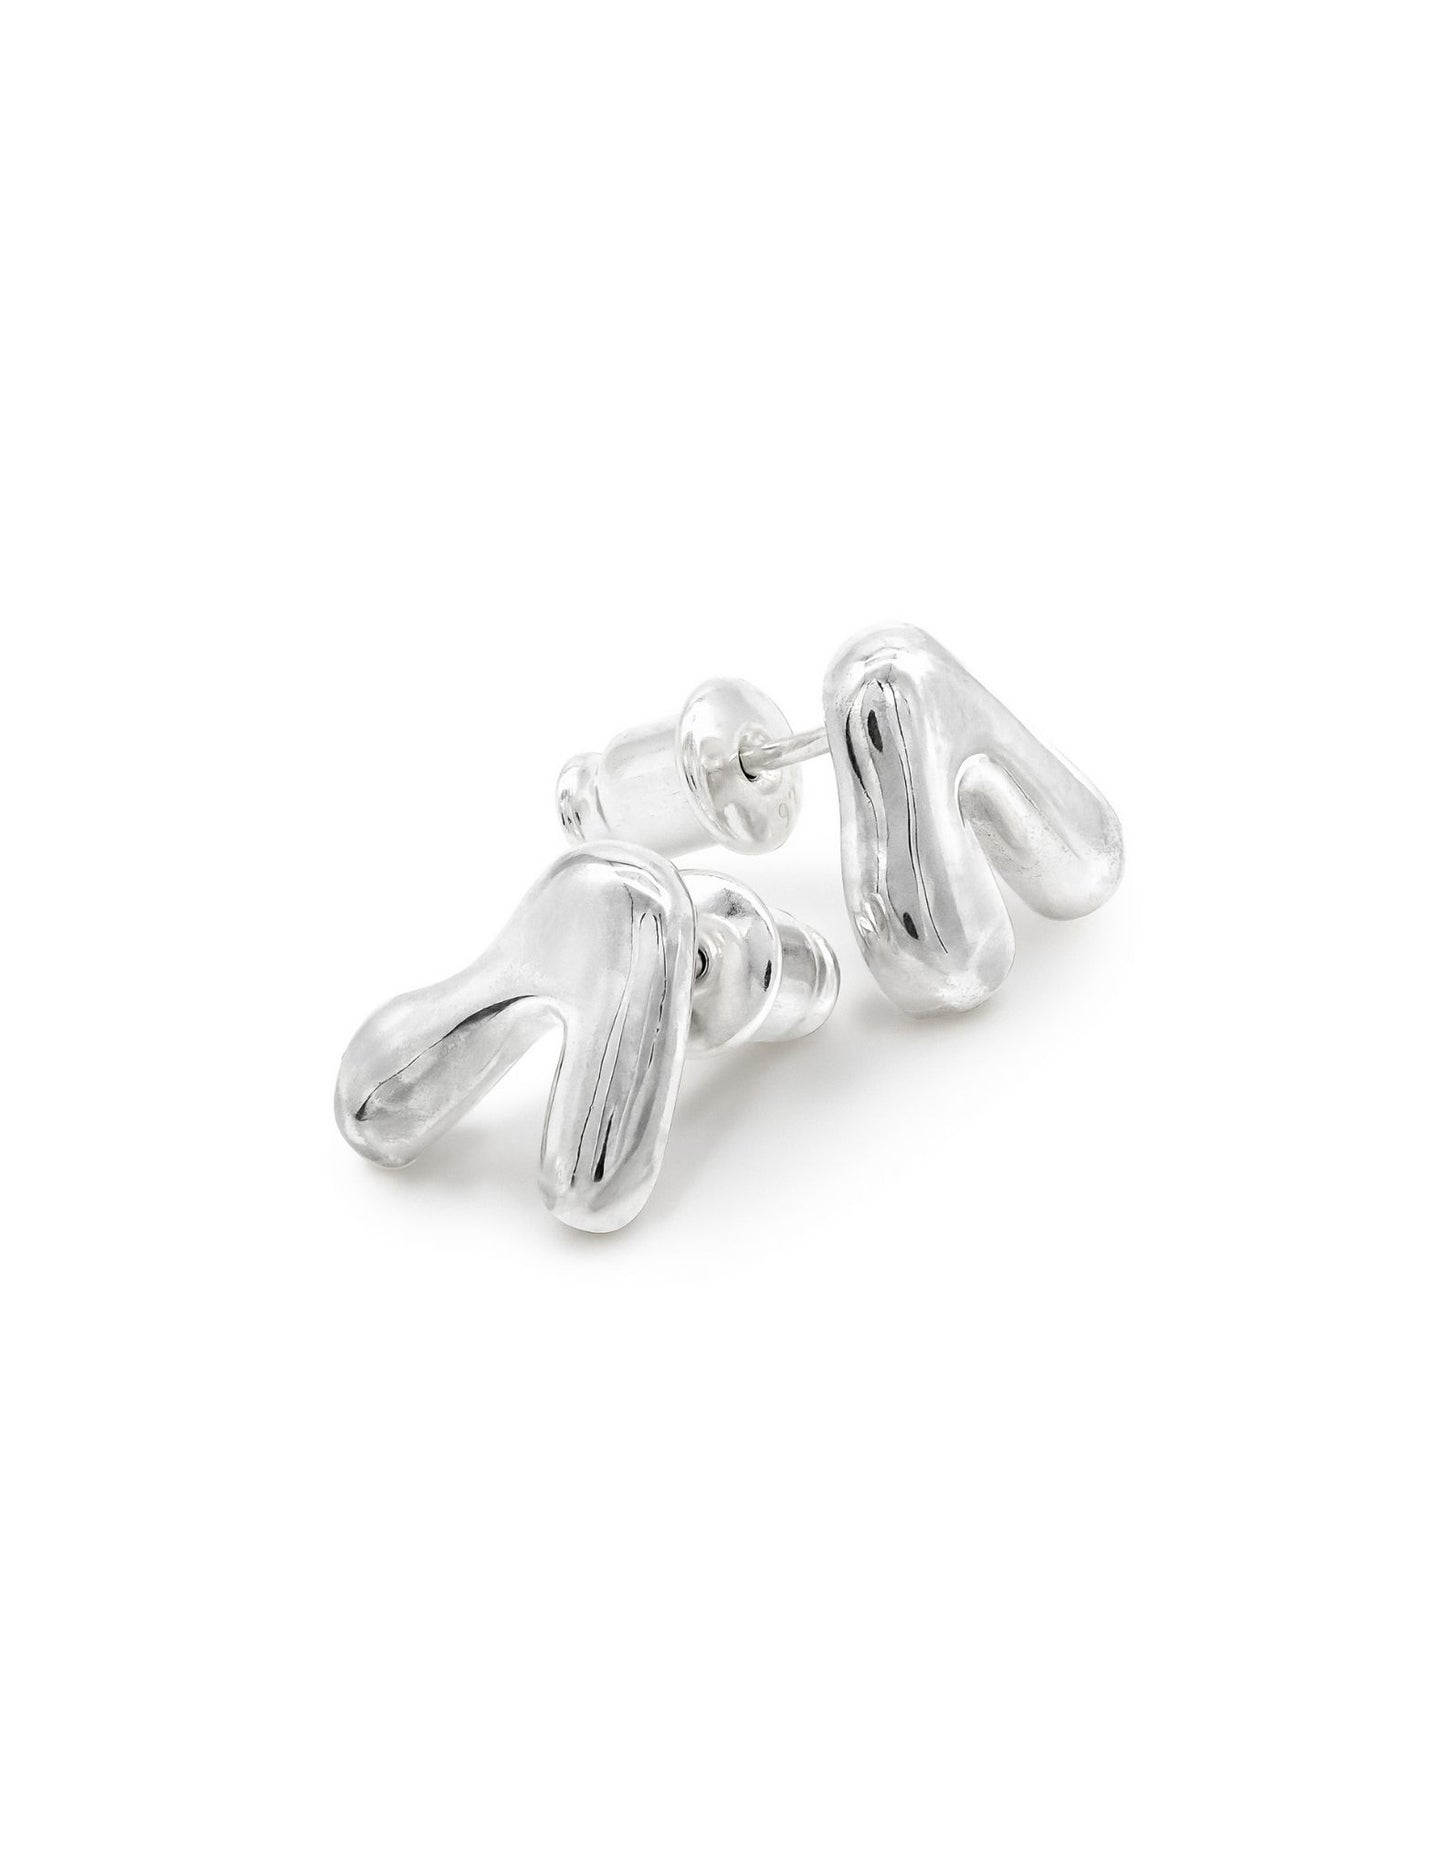 Kharys jewelry organic shaped flow stud earrings in 925 sterling silver